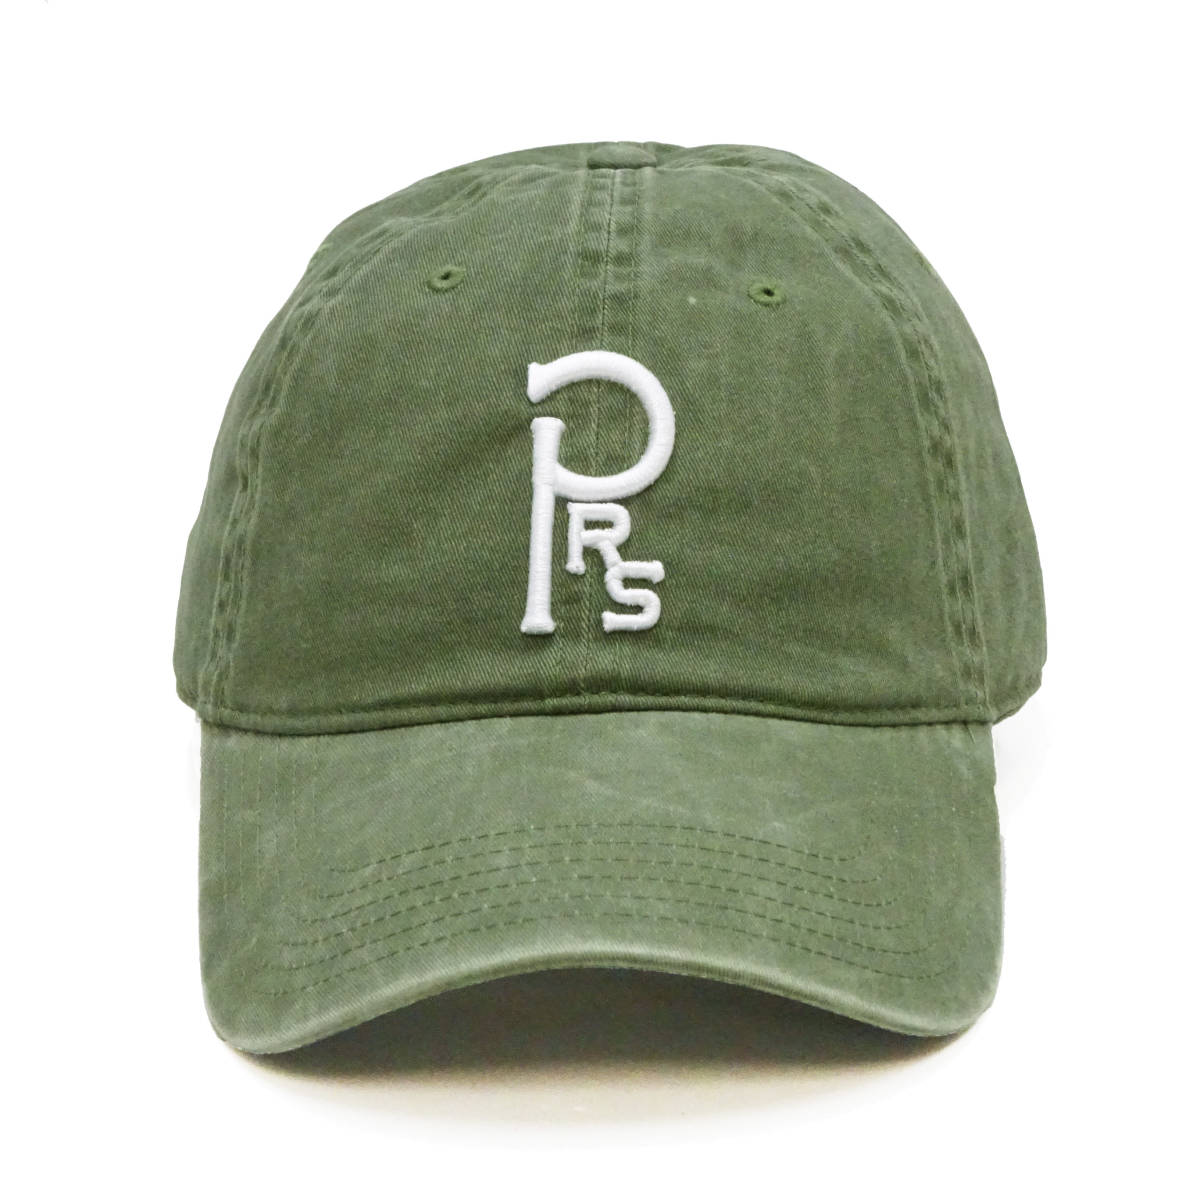 フェローズ キャップ Pherrows ６方パネル ピグメント加工 ベースボールキャップ 帽子 24S-PRSC1 オリーブ 新品_画像2